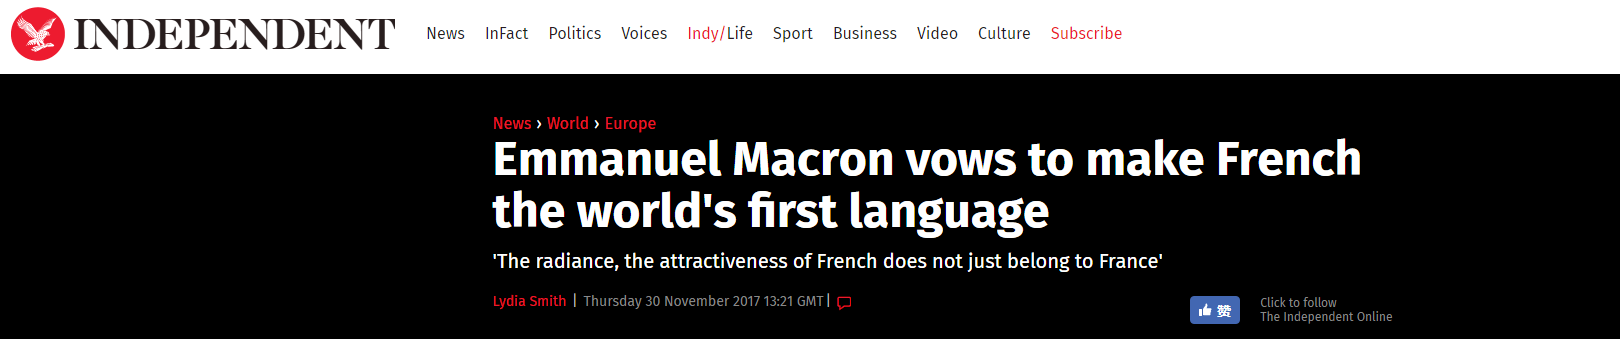 马克龙说法语将成世界第一语言 英国网民坐不住了